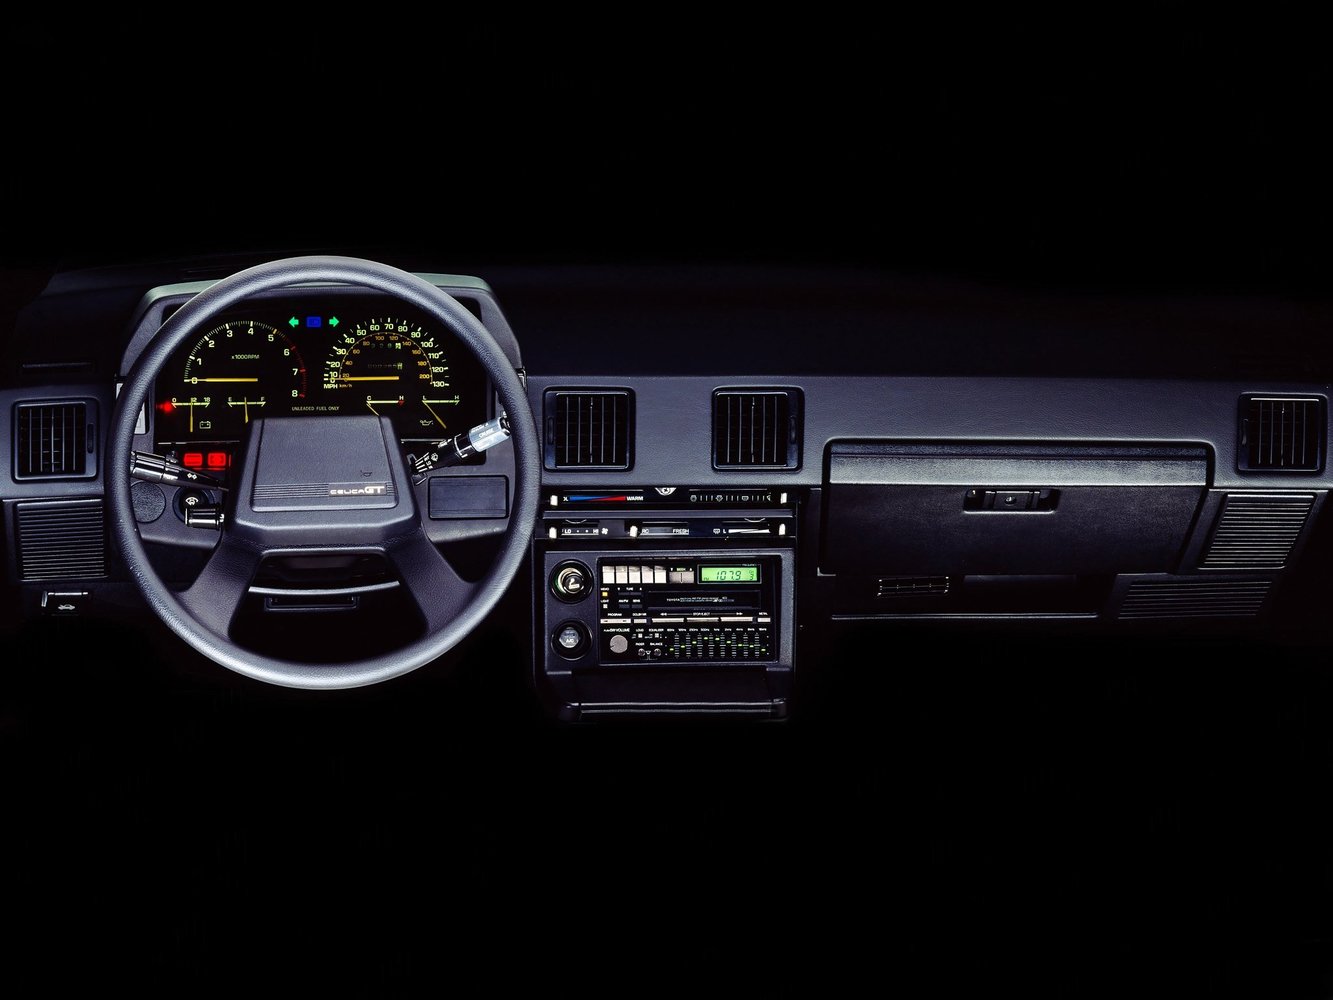 хэтчбек 3 дв. Toyota Celica 1982 - 1986г выпуска модификация 1.6 AT (120 л.с.)